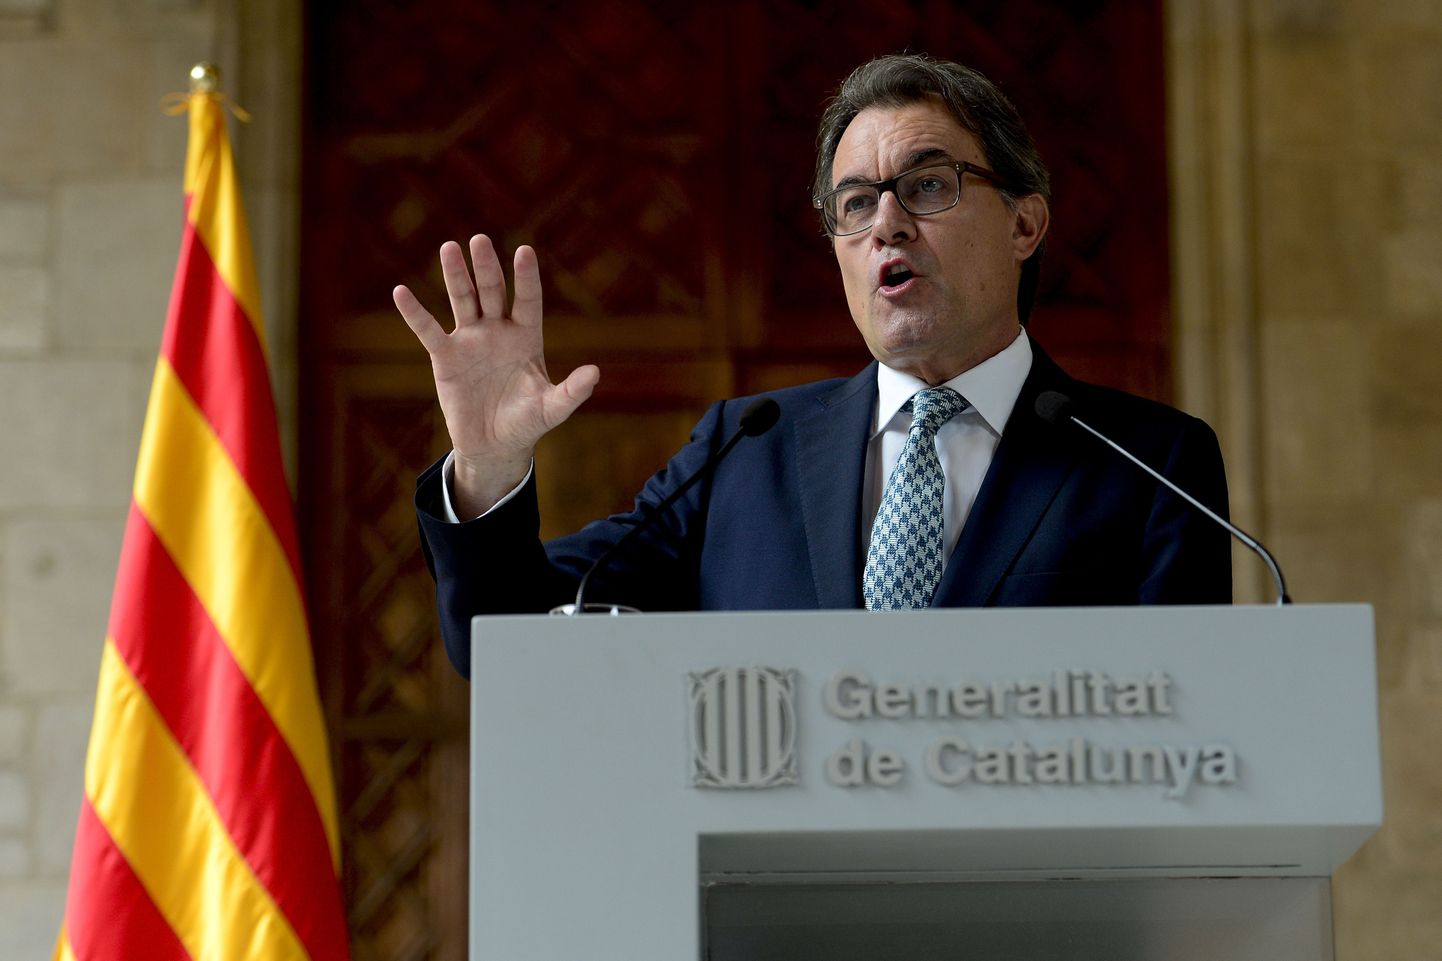 Kataloonia autonoomse piirkonna president Artur Mas kinnitas, et küsitlus 9. novembril tuleb, aga teises õiguslikus raamistikus.